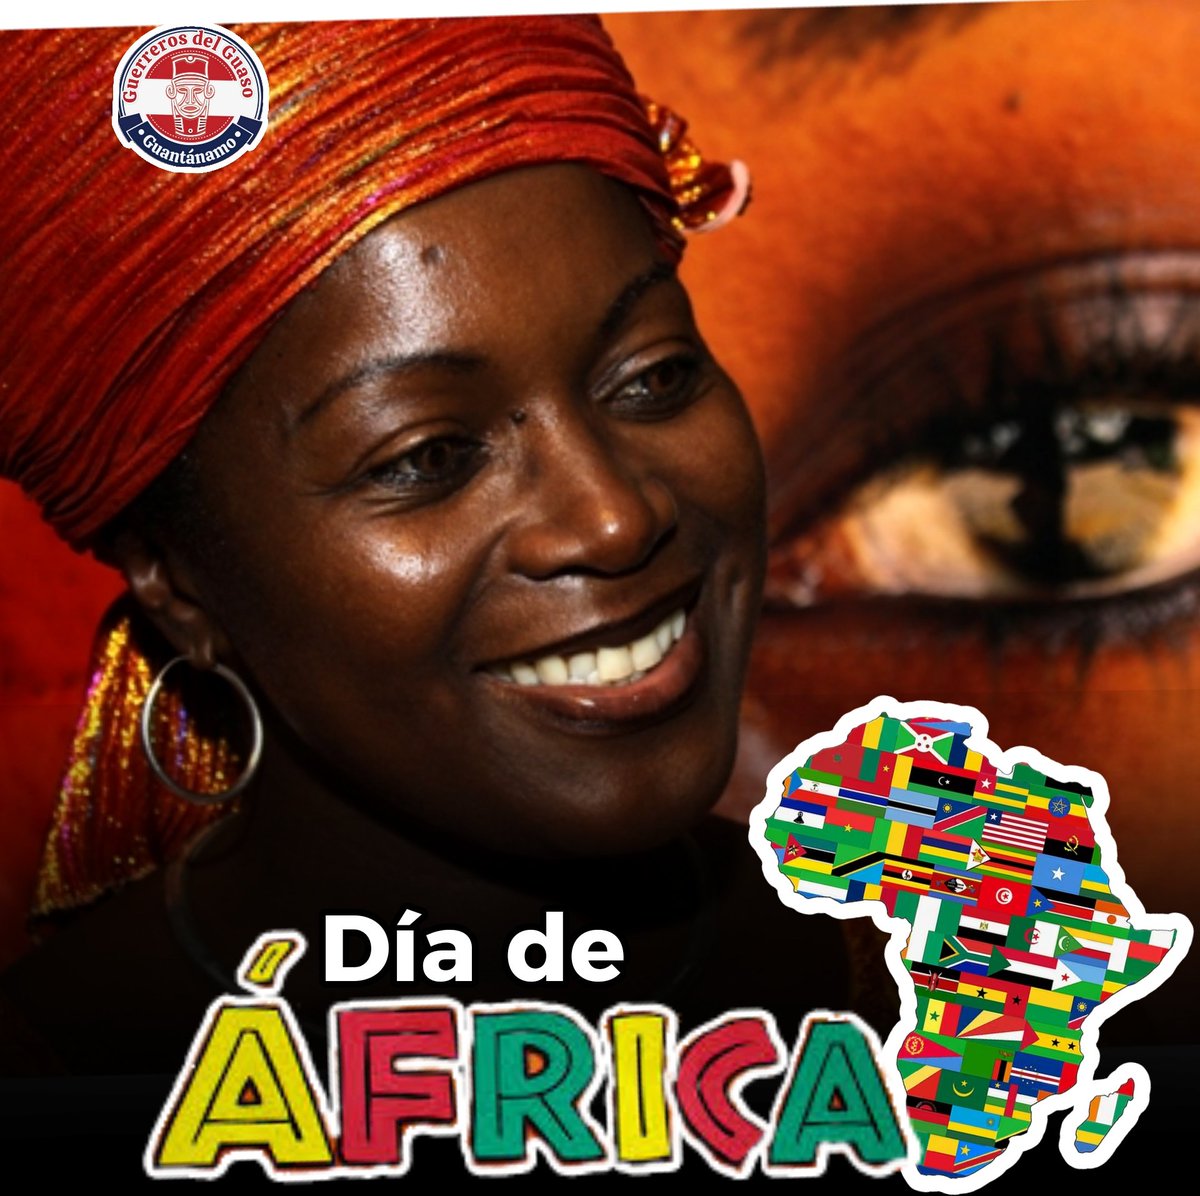 #Artemisa Celebrando el Día de África!!!! Cada 25 de mayo se celebra el Día de África, para recordar el nacimiento oficial en 1963 de la Organización de la Unidad Africana (OUA) en Addis Abeba